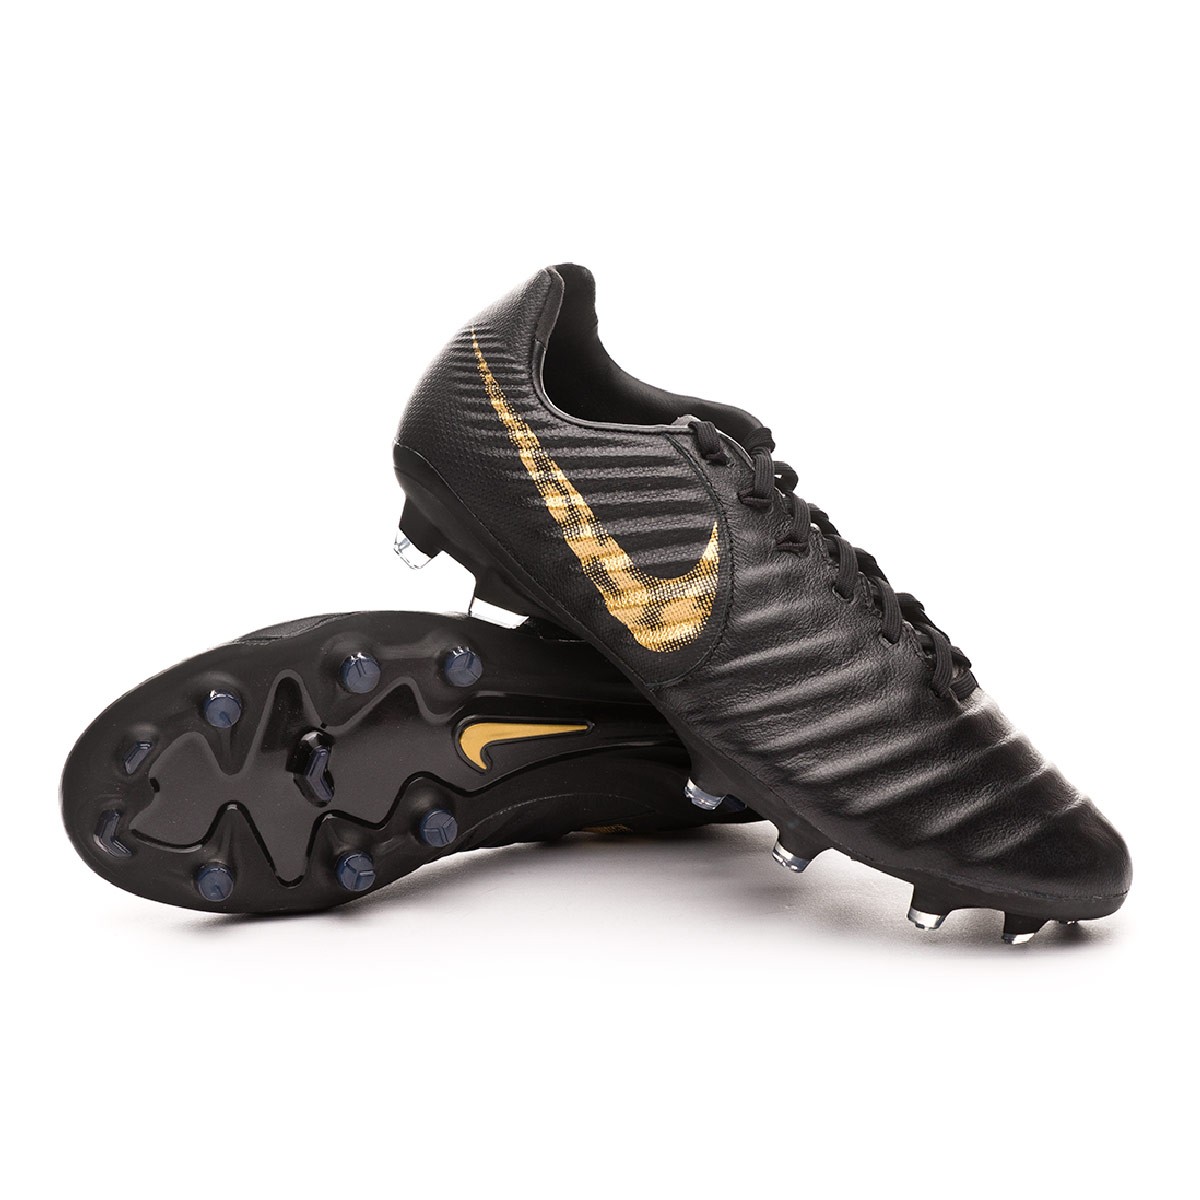 Bota de fútbol Nike Tiempo Legend VI Pro FG Black-Metallic vivid gold -  Tienda de fútbol Fútbol Emotion